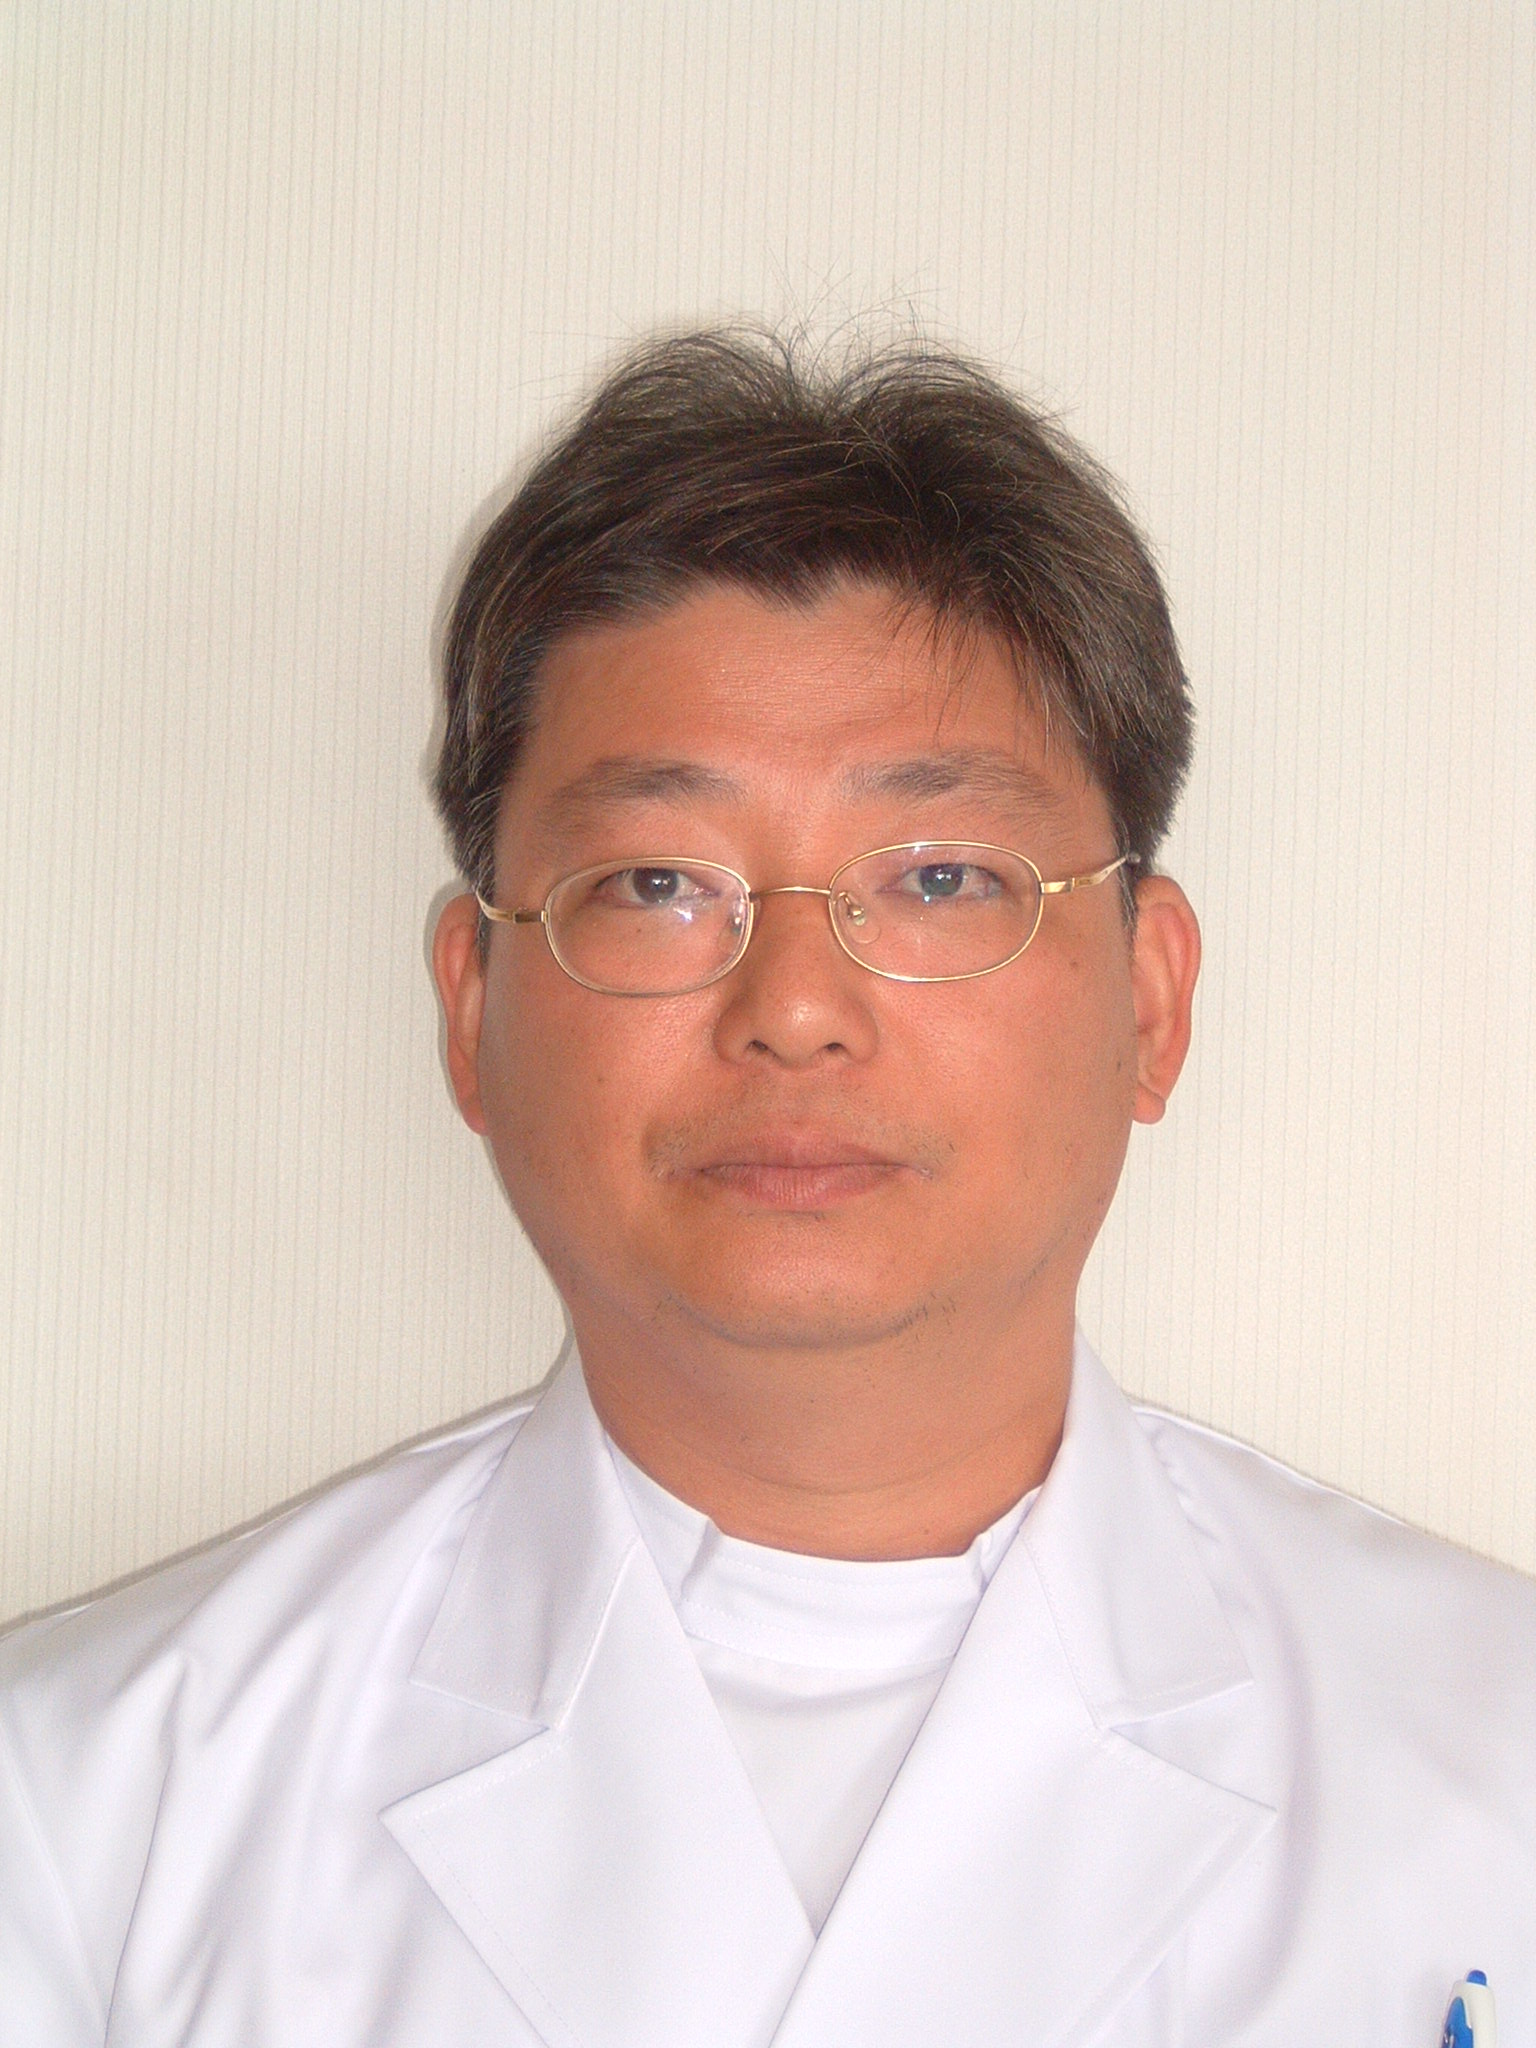 DR_YUHARA.JPG - 517,490BYTES